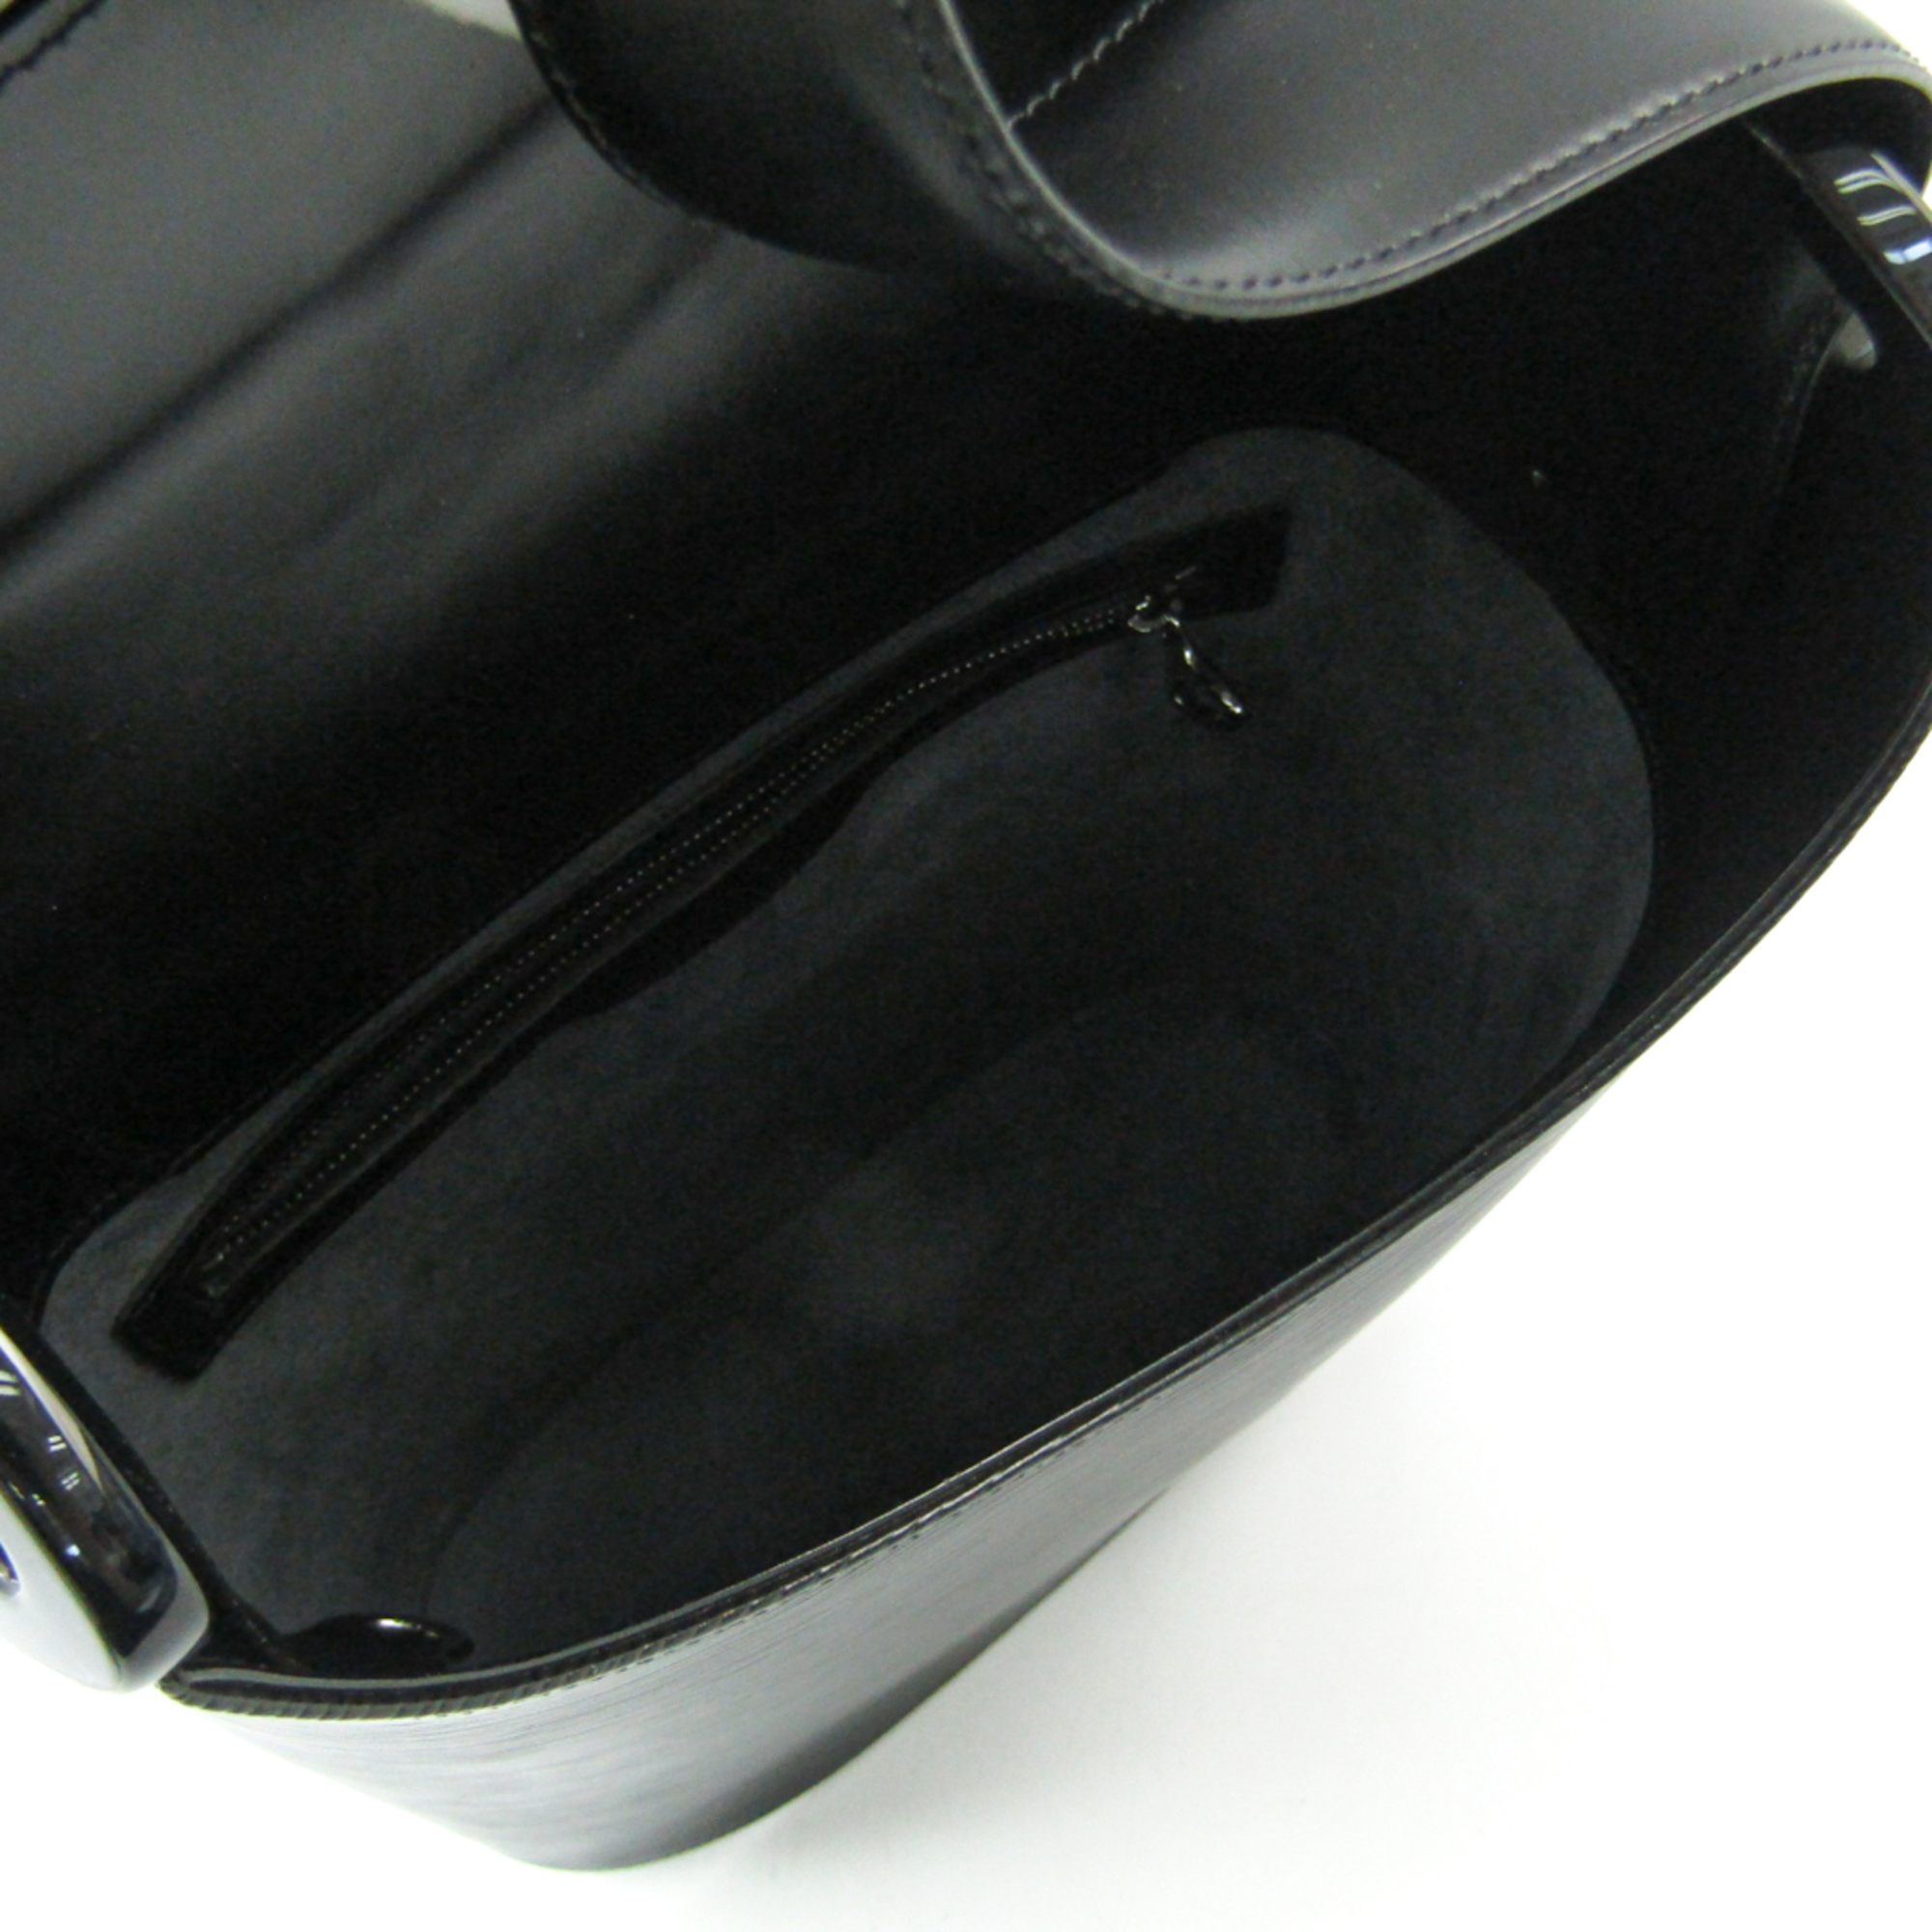 Louis Vuitton Epi Verseau M52812 Shoulder Bag Noir